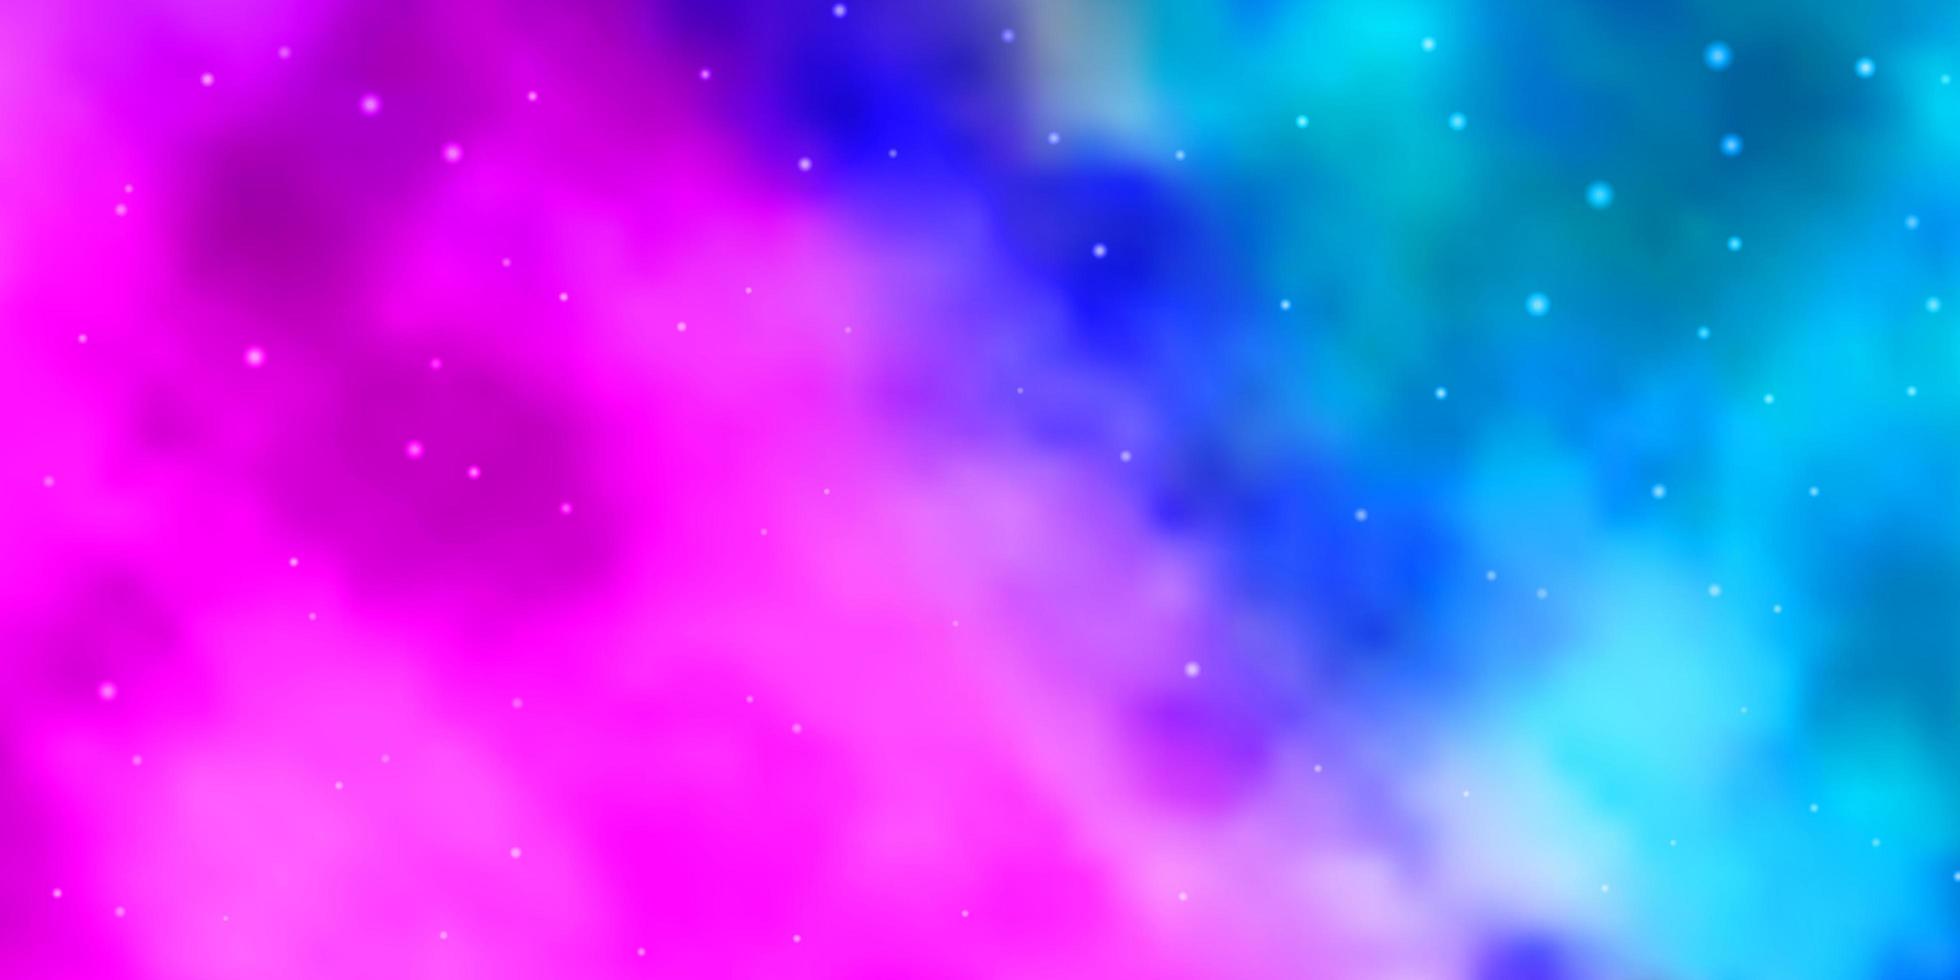 ljusrosa, blått vektormönster med abstrakta stjärnor. vektor